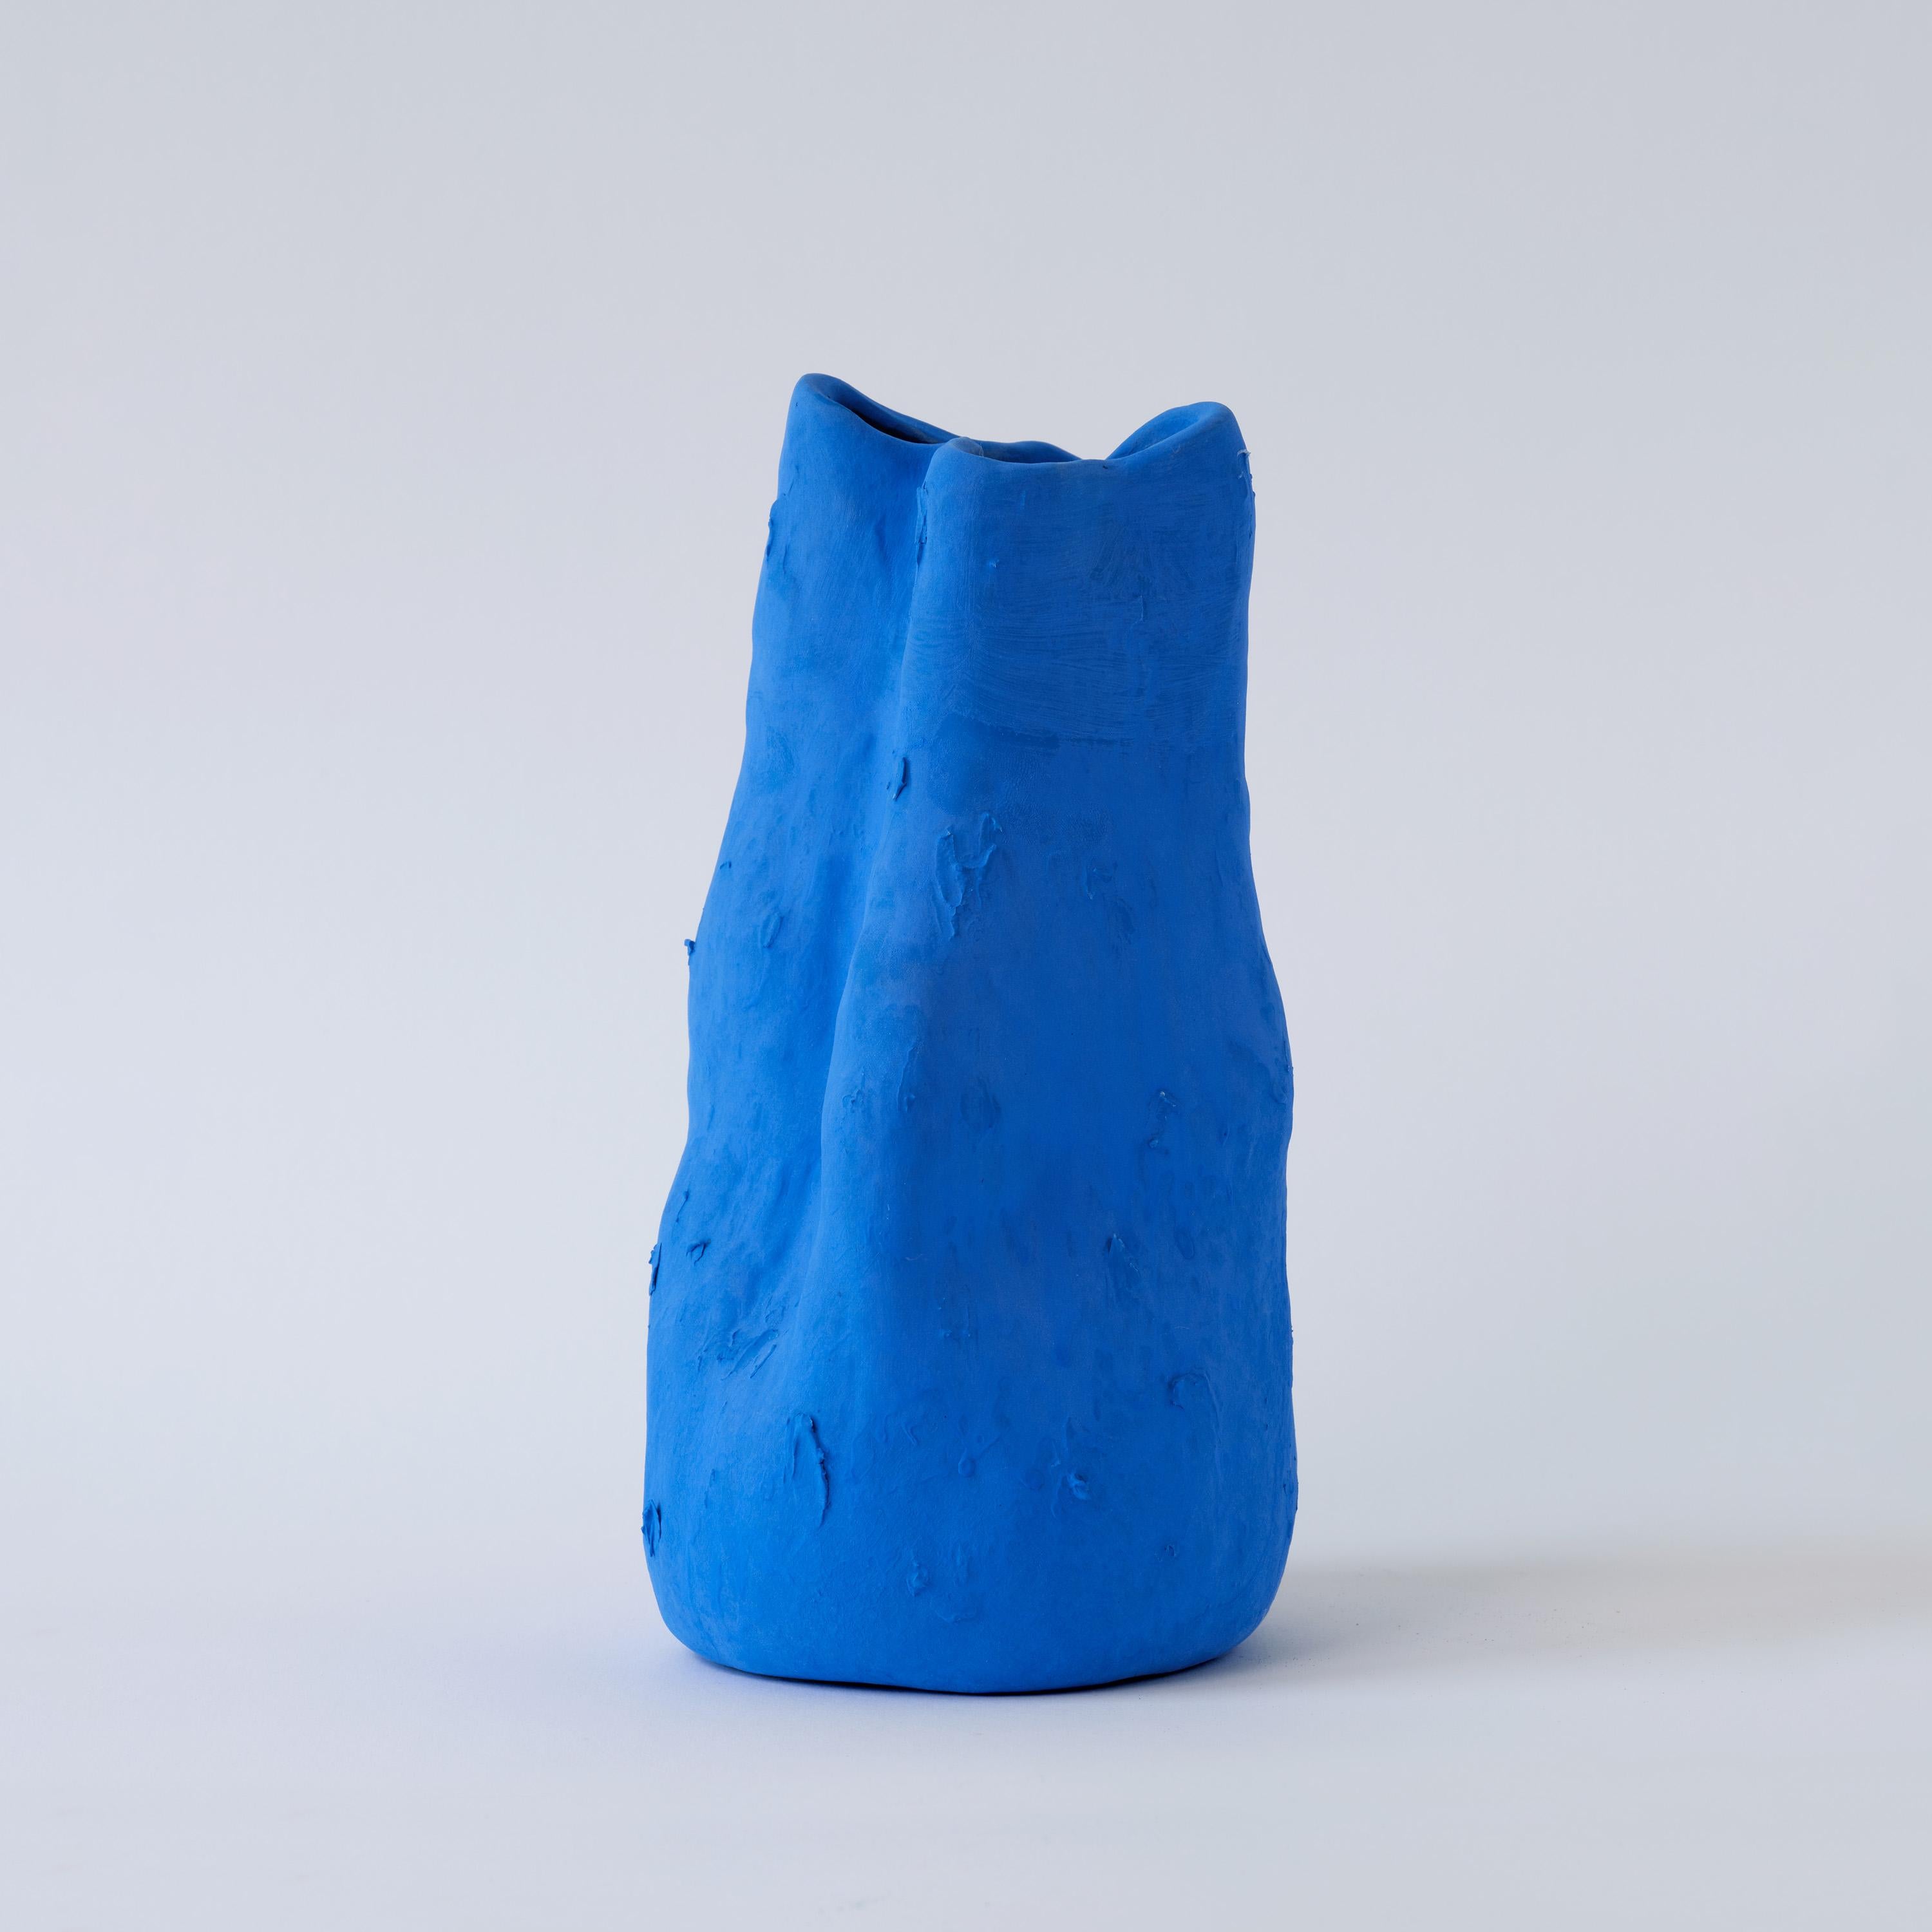 Emitiendo un tranquilo color azul mate y mostrando una auténtica textura sin esmaltar, el jarrón Georgia encarna el espíritu atrevido e imaginativo de la visión artística de Yves Klein.

En el mundo actual, preocupado por el medio ambiente, el gres